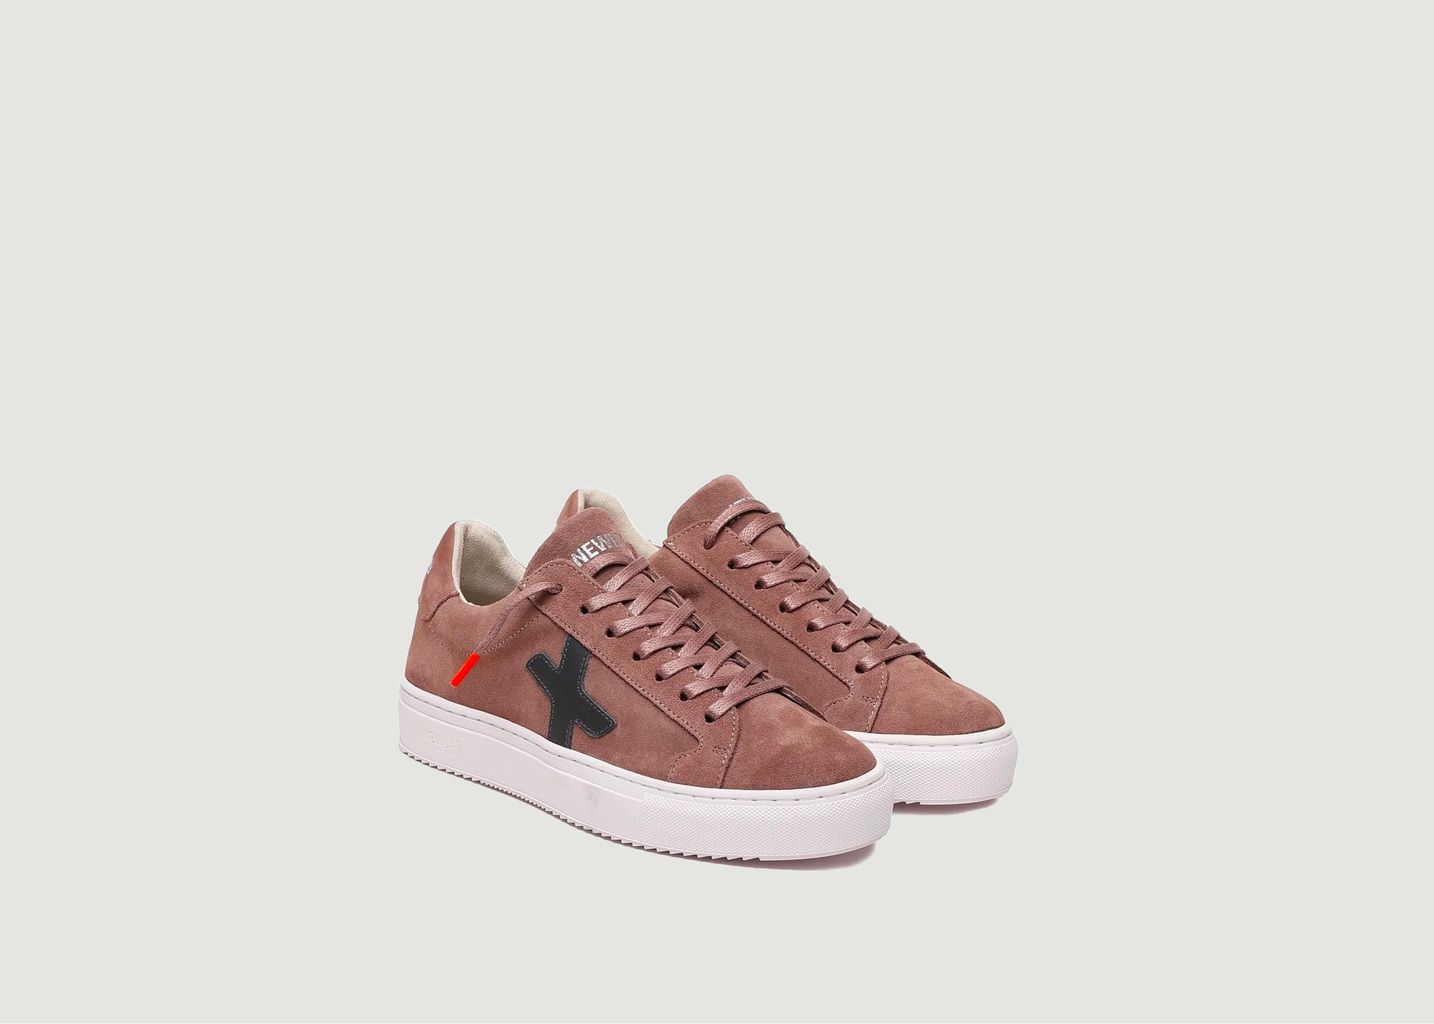 Sneaker NL08 - Newlab